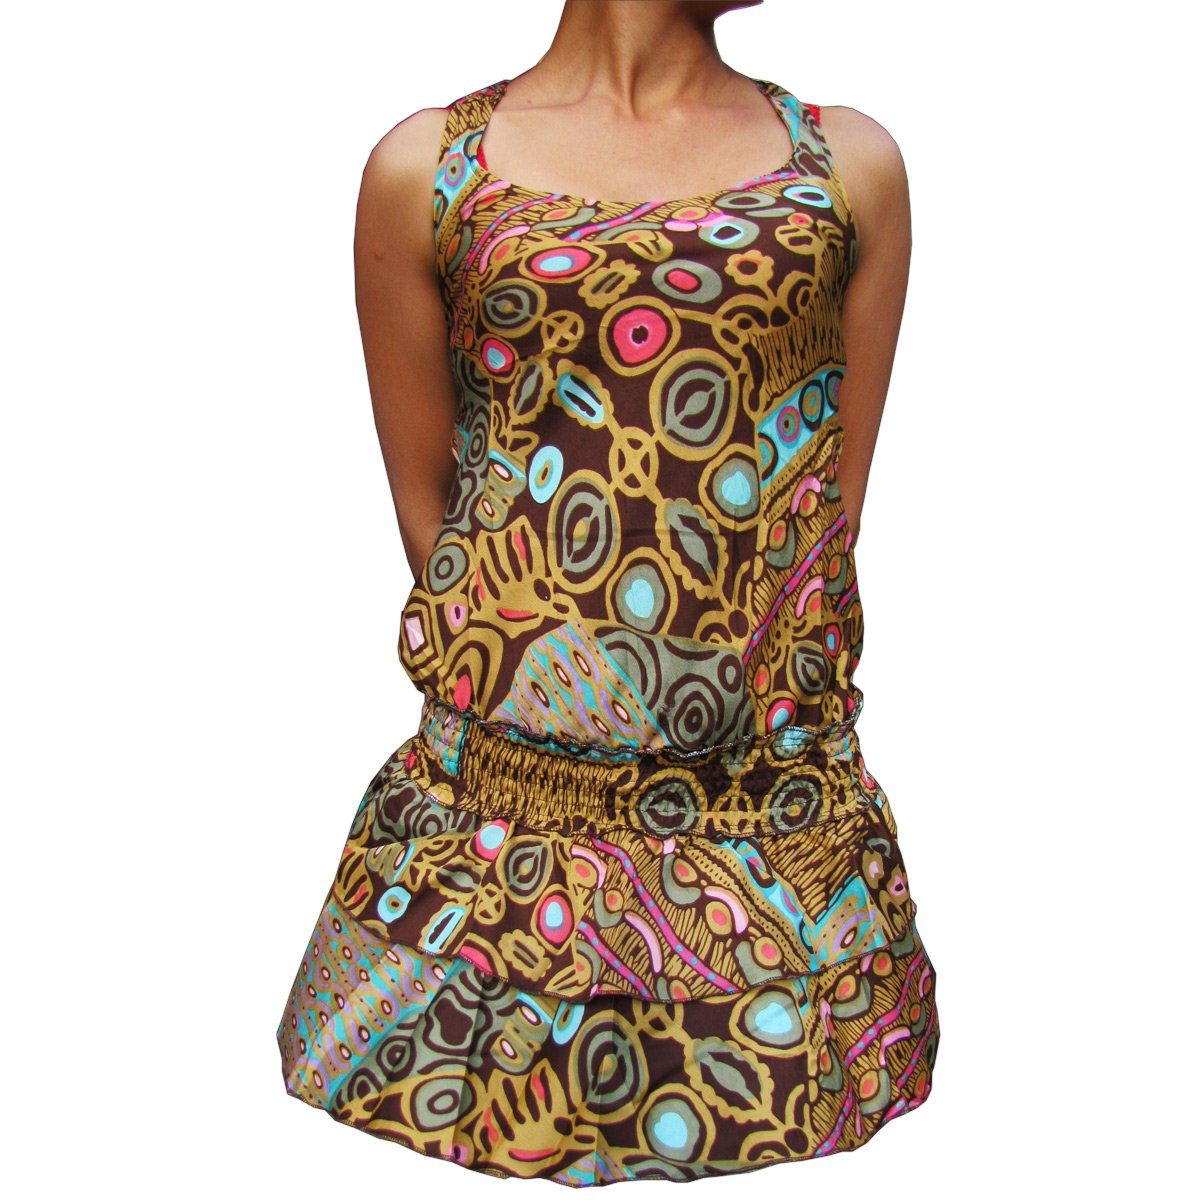 PANASIAM Tunikakleid Sommerkleid in verschiedenen Designs farbenfrohe Tunika aus feiner Viskose auch für Schlagerparty 70er Party oder Festivals ein Hingucker Braun